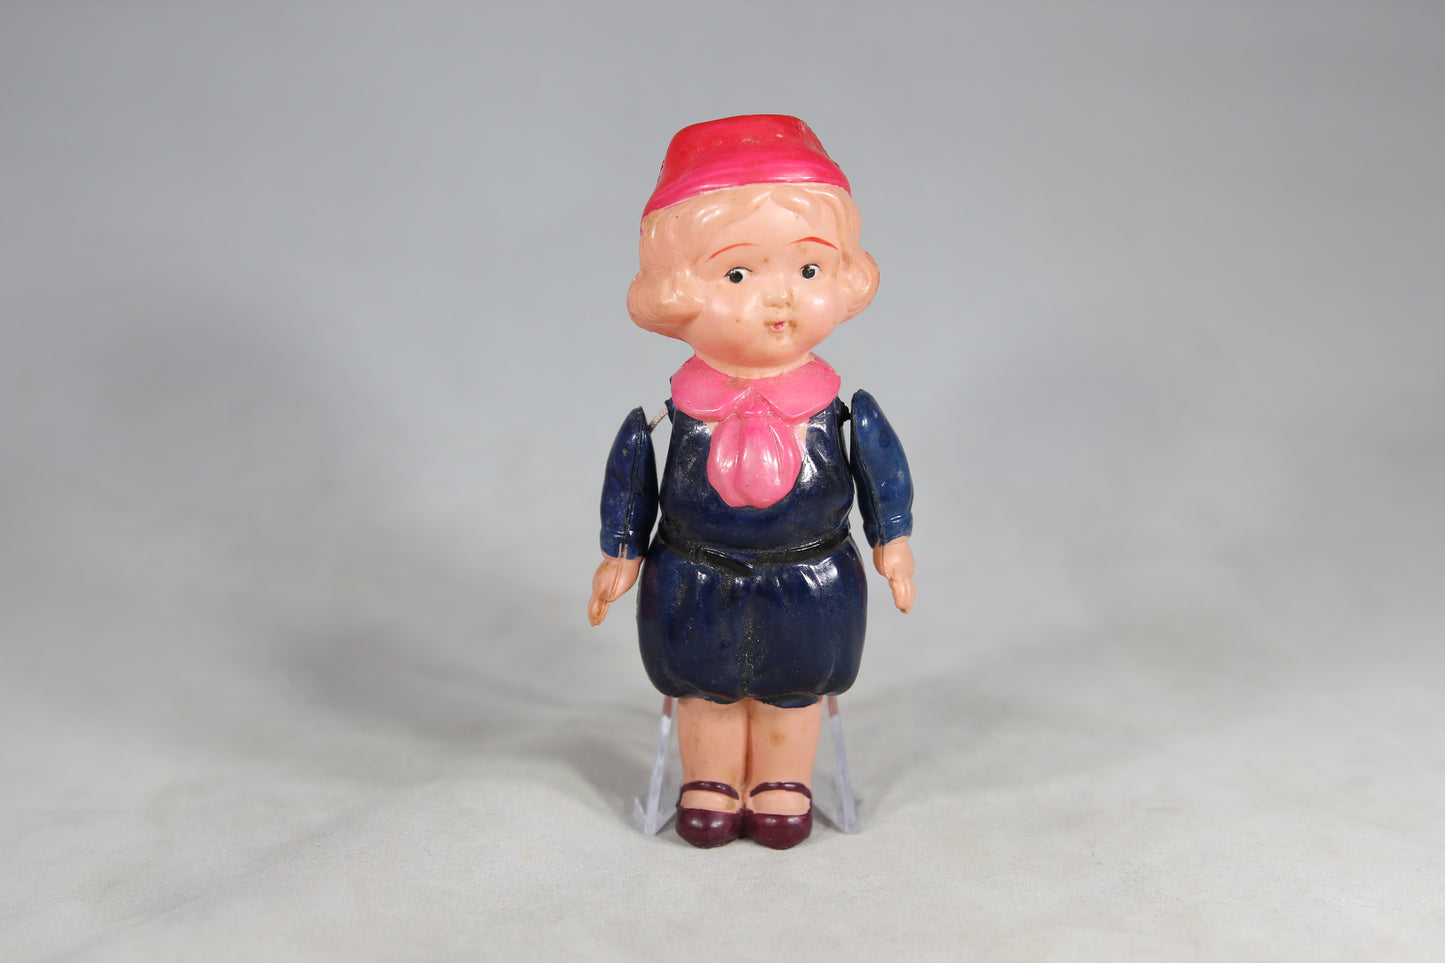 Handpainted Celluloid School Girl Kewpie Doll Made in Japan, 5"